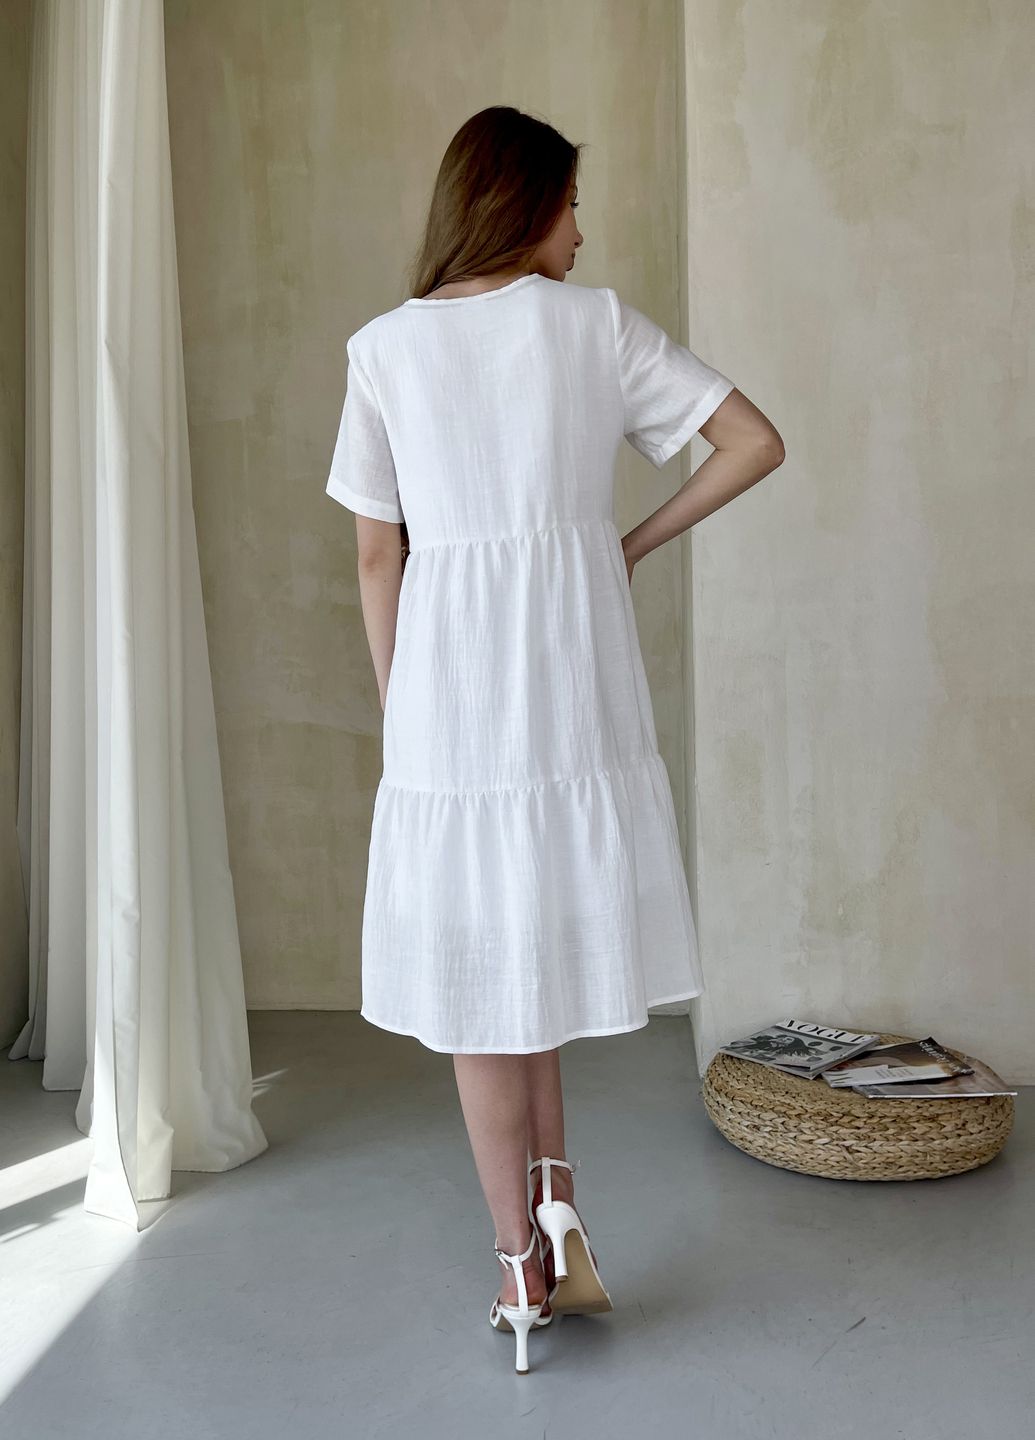 Купить Женское платье до колена однотонное с коротким рукавом из льна белое Merlini Сесто 700000163, размер 42-44 (S-M) в интернет-магазине